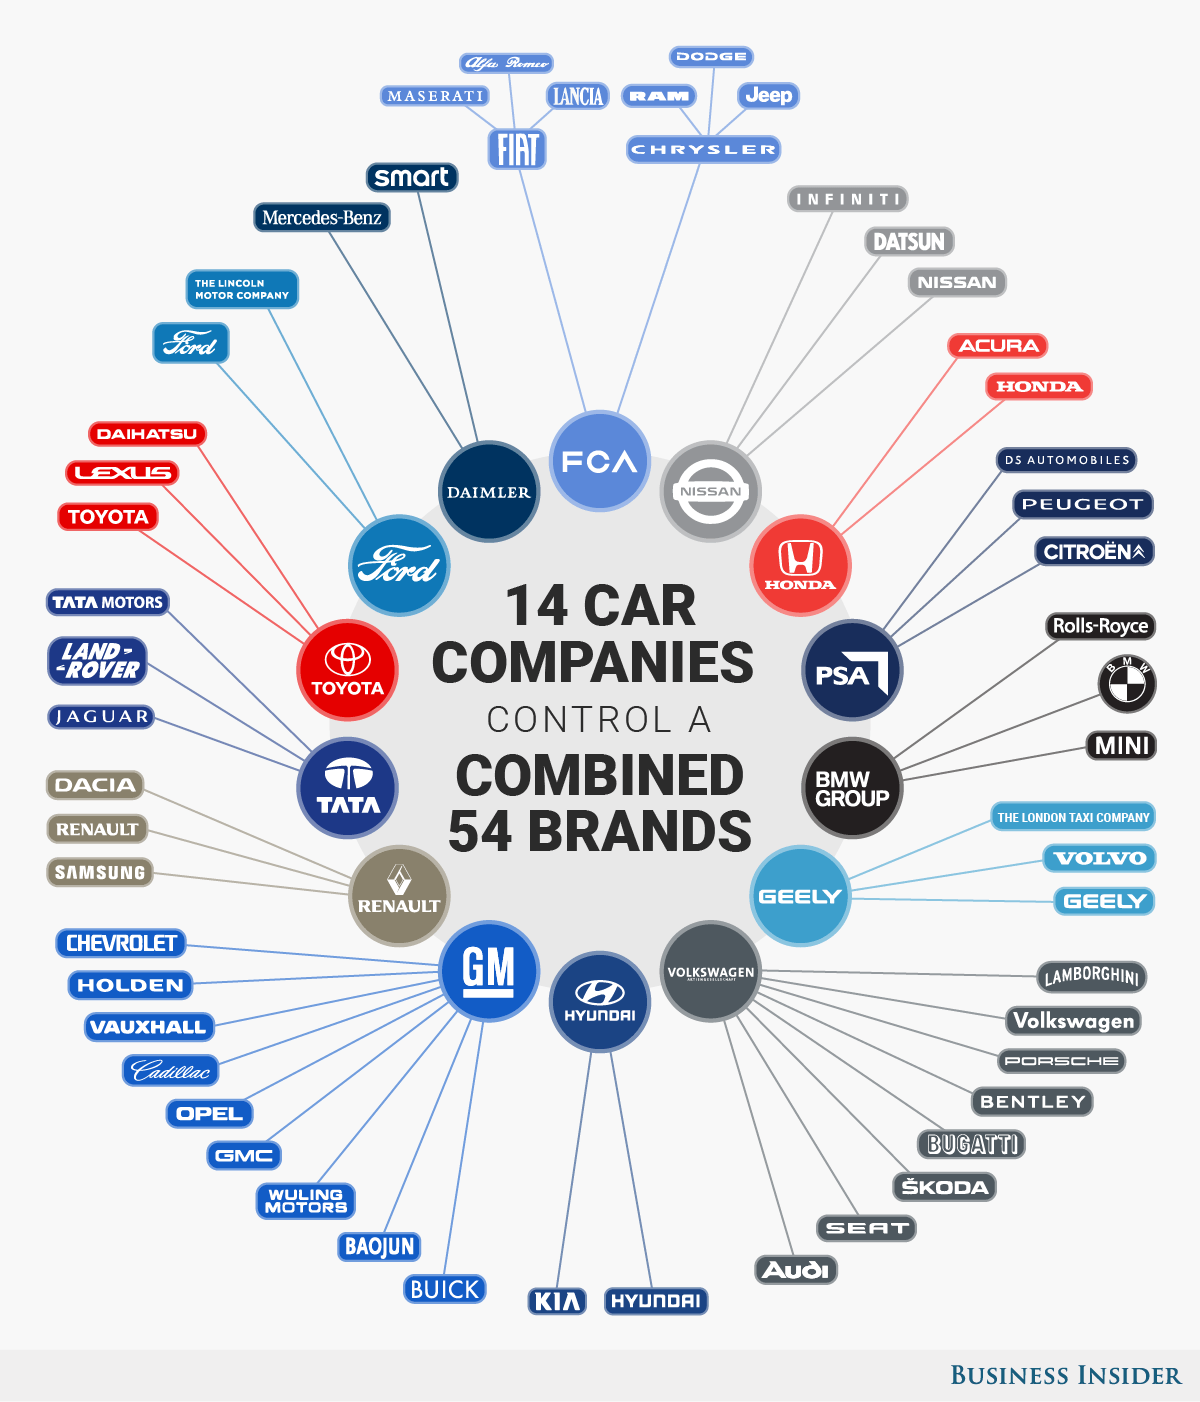 Brand di Auto nel mondo infografica